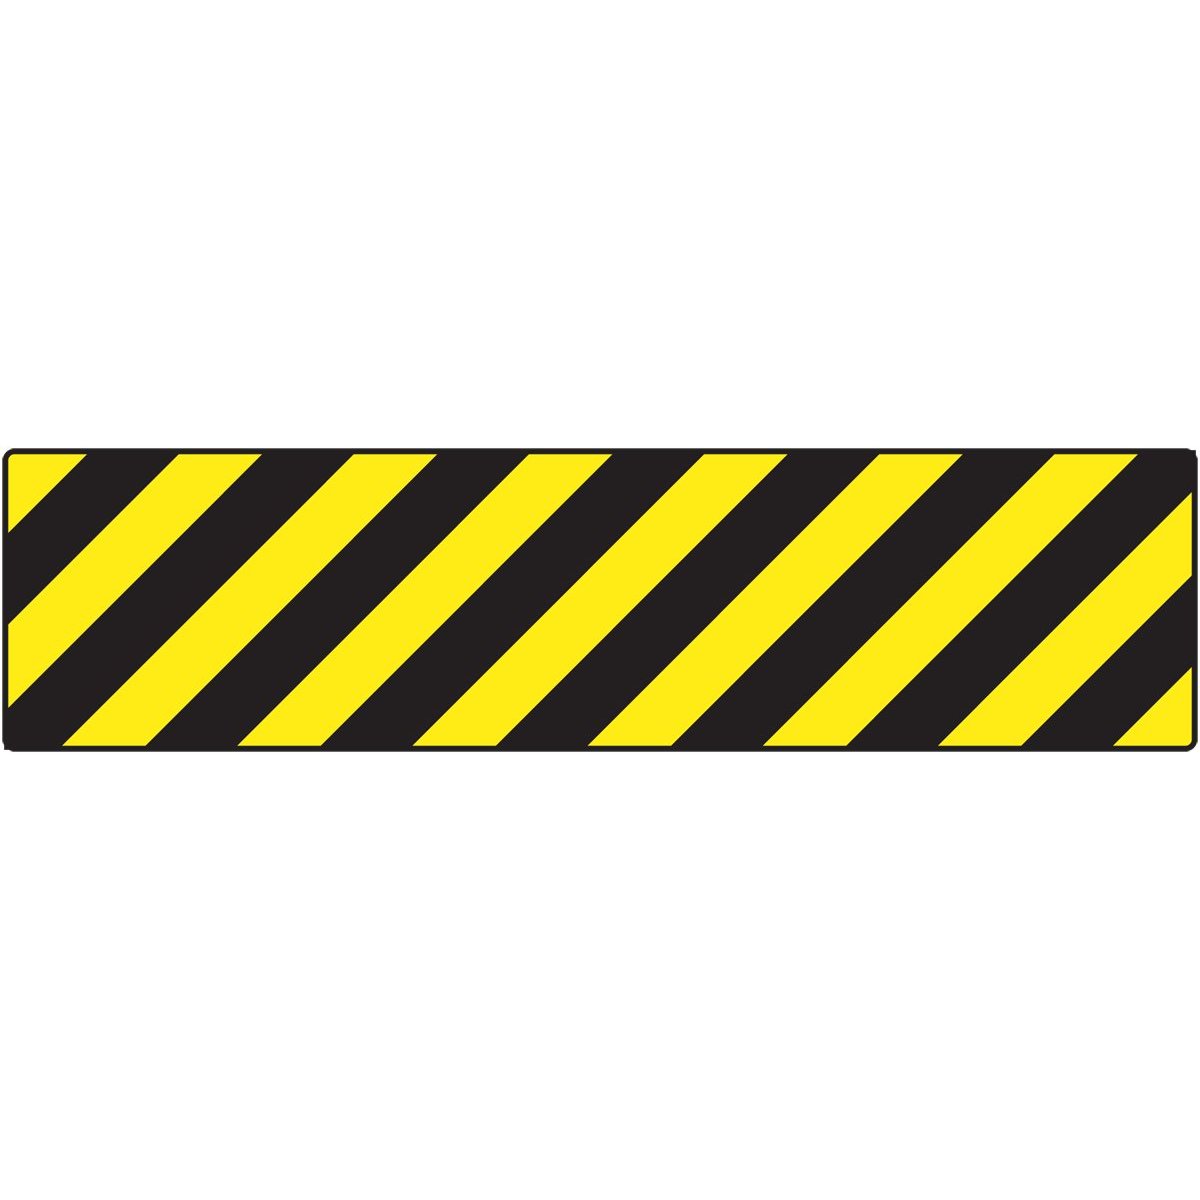 caution tape on door